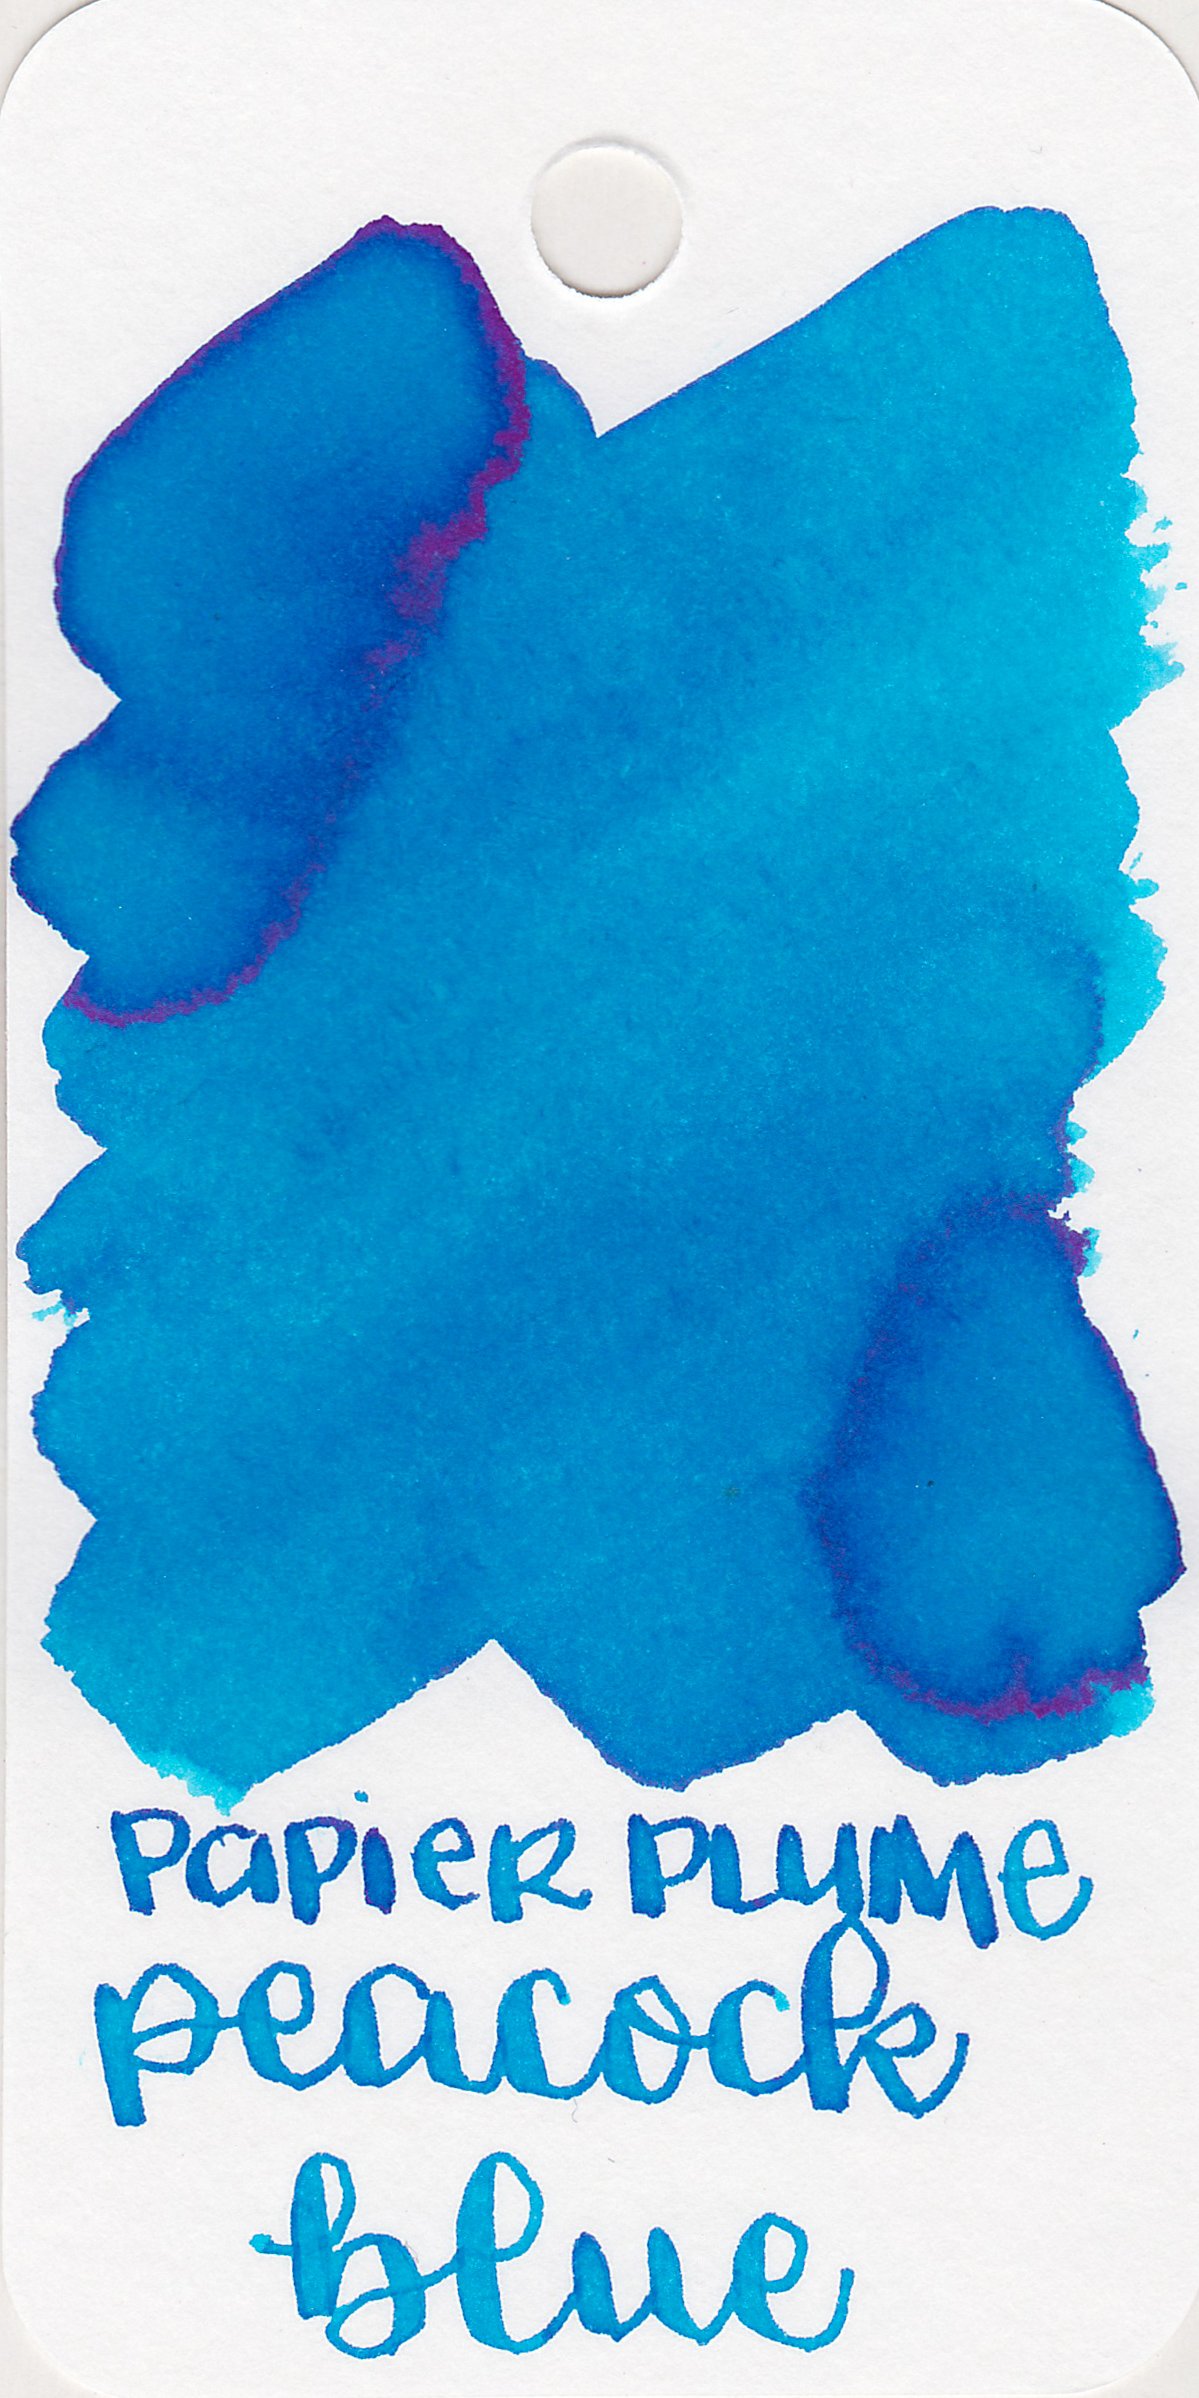 pp-peacock-blue-1.jpg